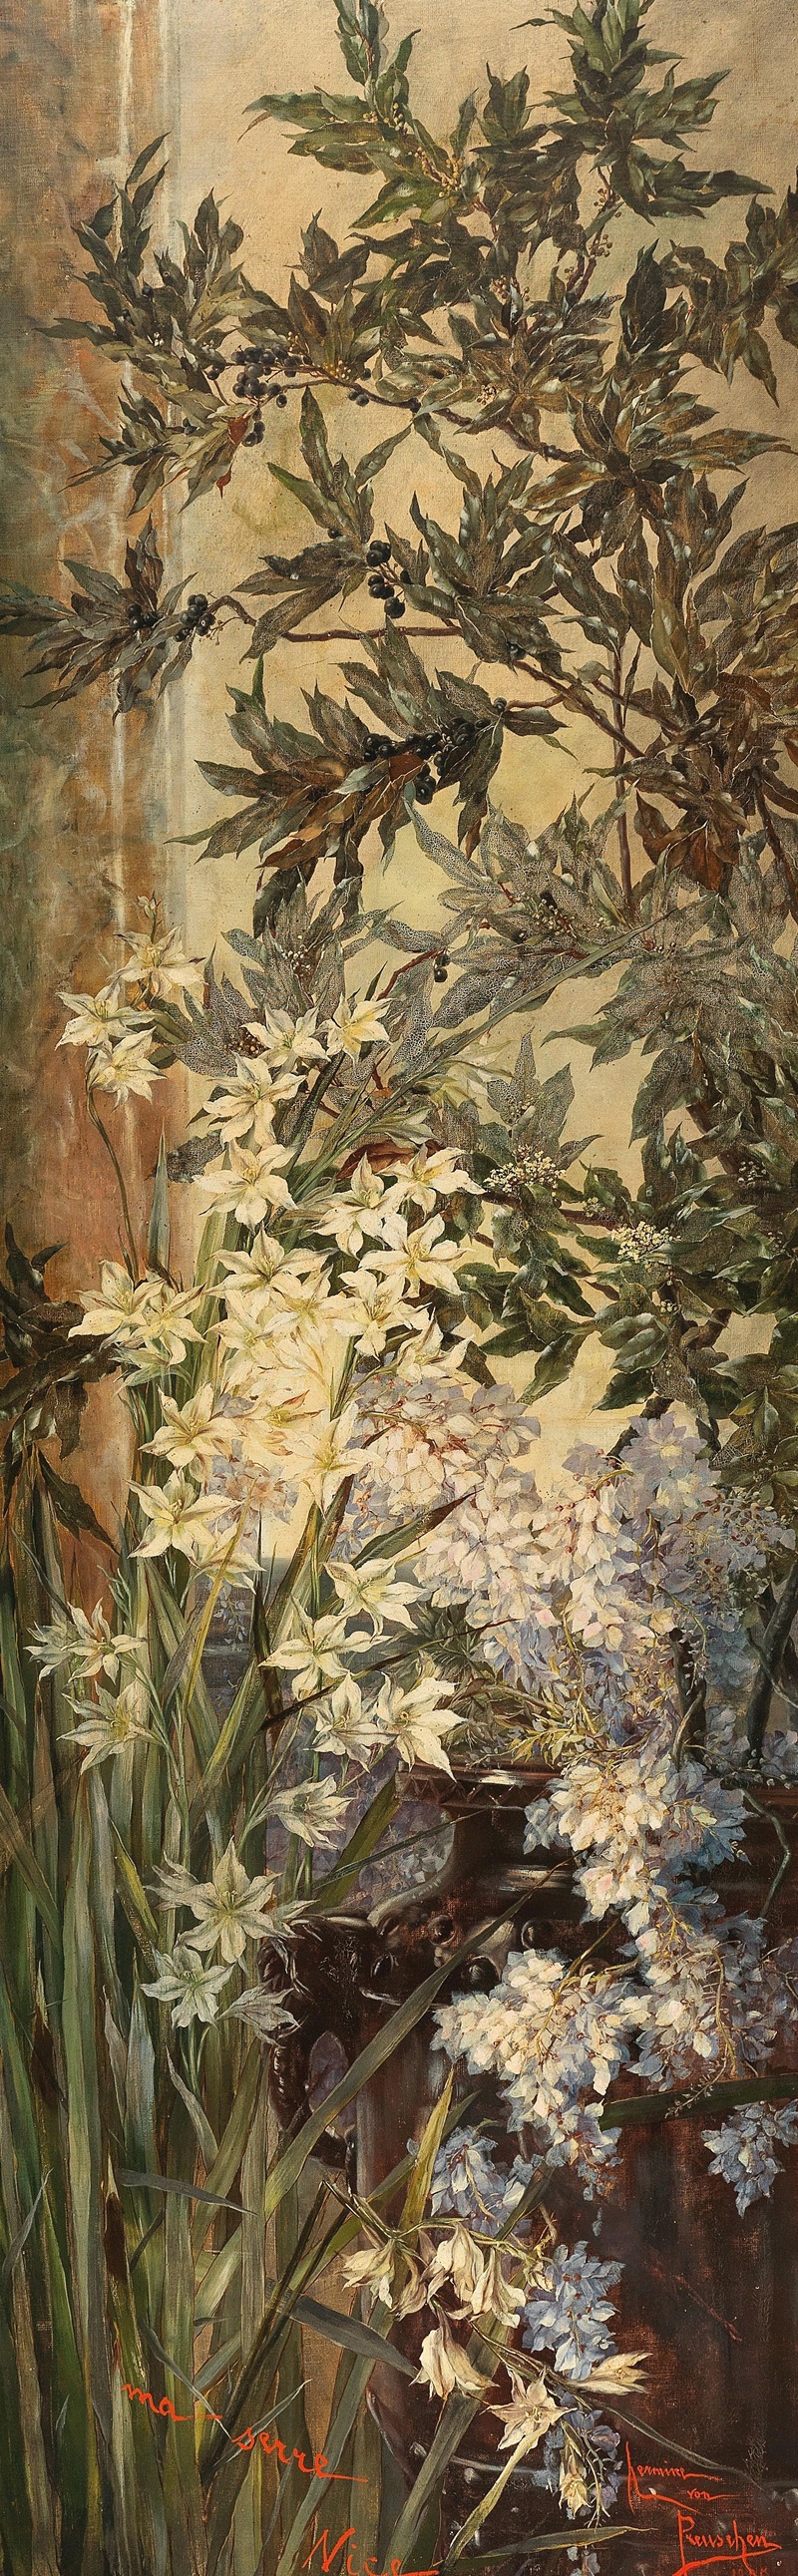 Hermione von Preuschen - ‘Ma serre Nice’, Lorbeerzweige und weiße Lilien in einem südlichen Gewächshaus